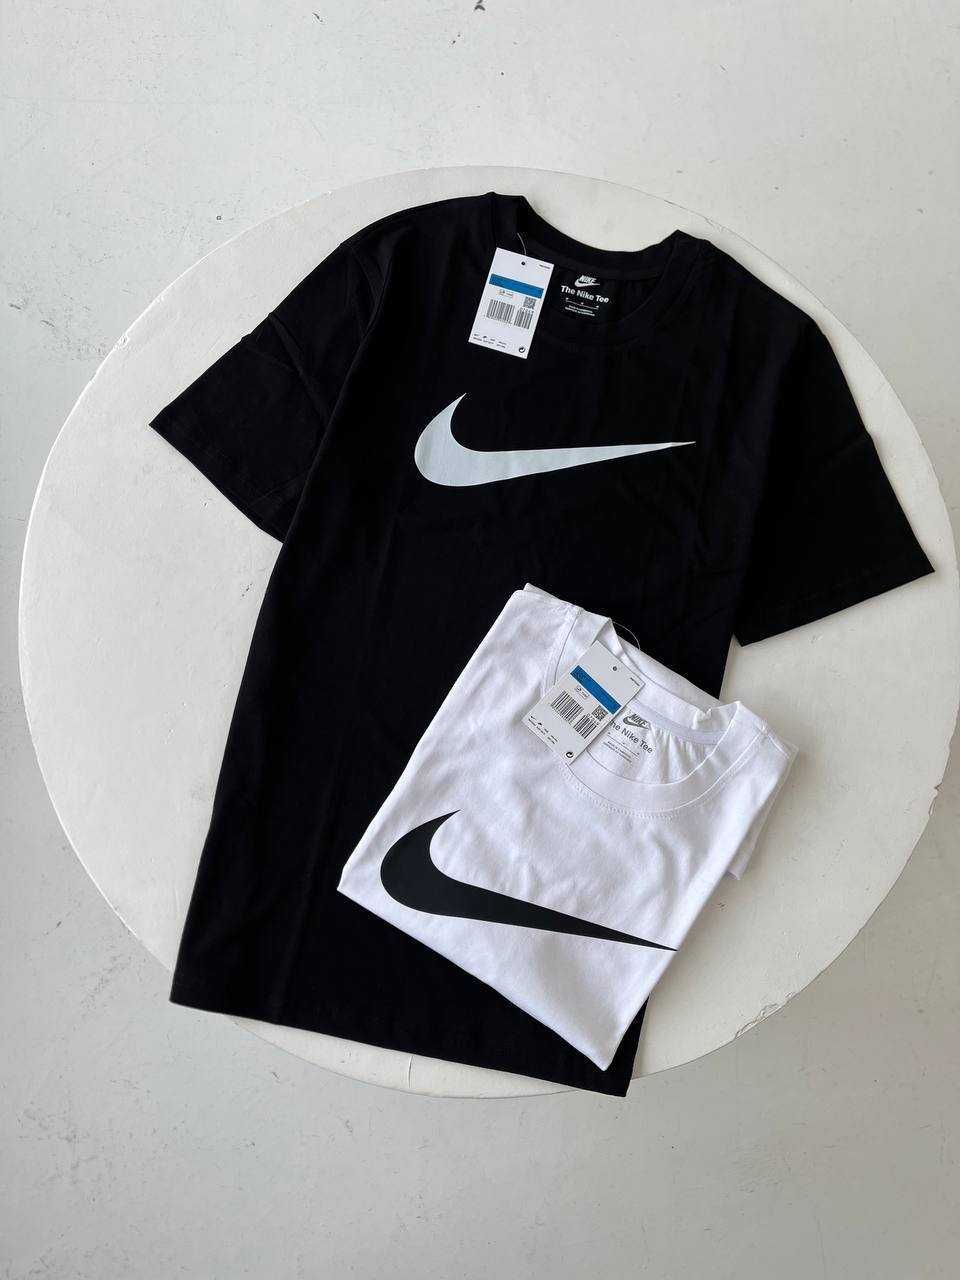 Футболка Nike белая и черная, S/M/L